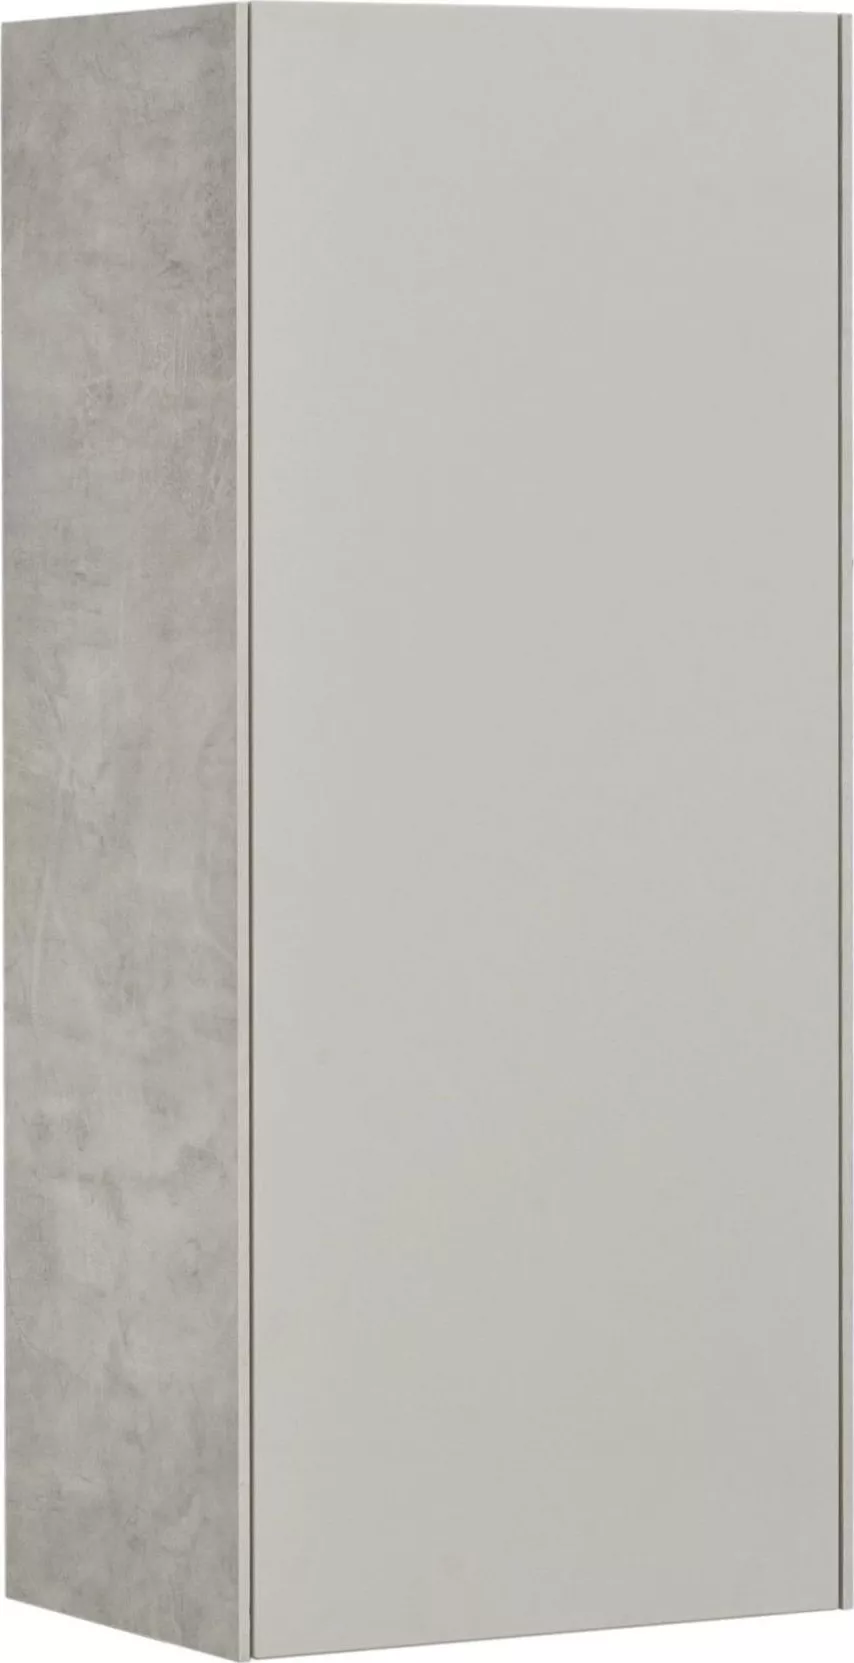 Шкаф-пенал Акватон Сохо 35x80 см серый 1A258403AJ9A0 правый